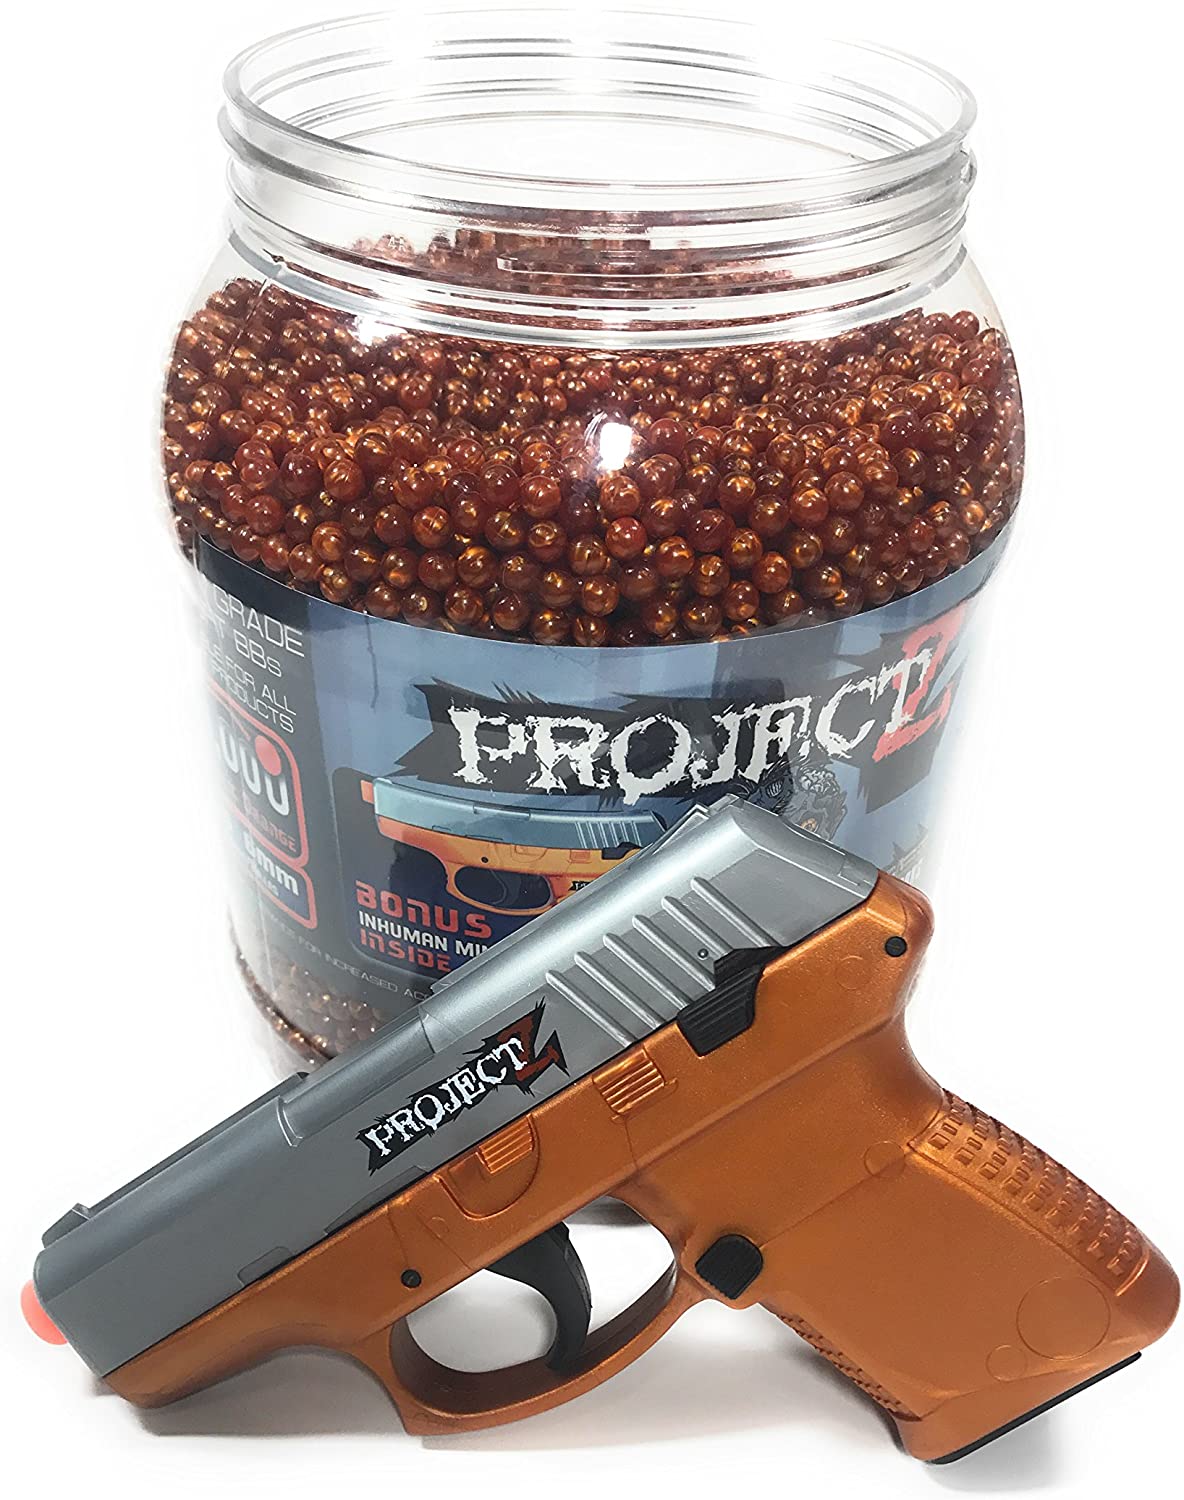 ProjectZ 14,000 Premium .12gm Airsoft BBS Bonus Pistol 